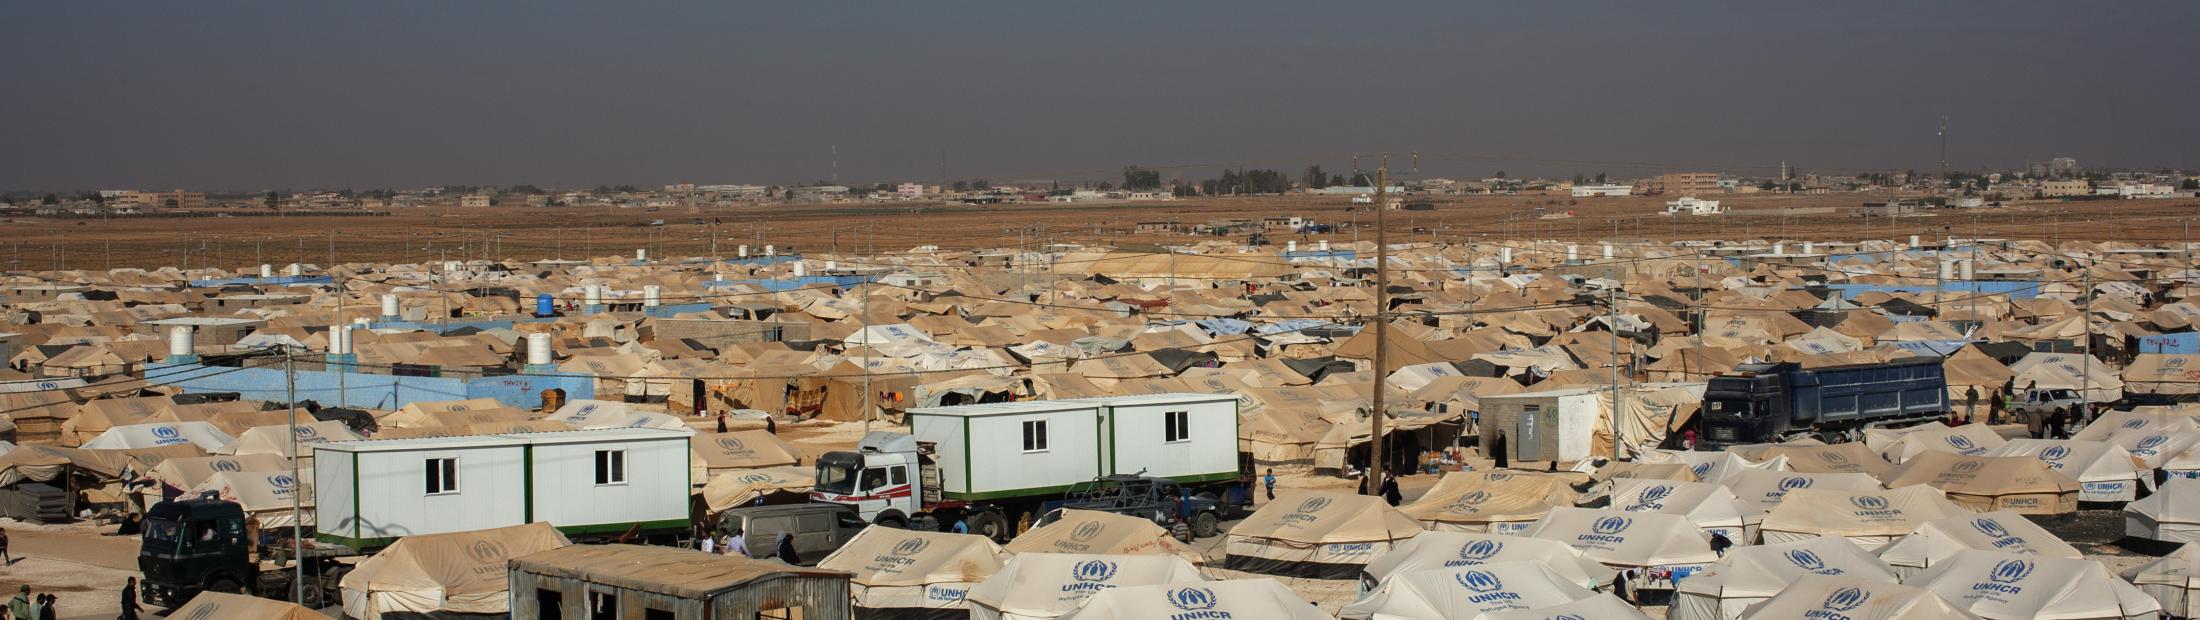 Za'atari, el segundo campo de refugiados más grande del mundo, cumple 3 años